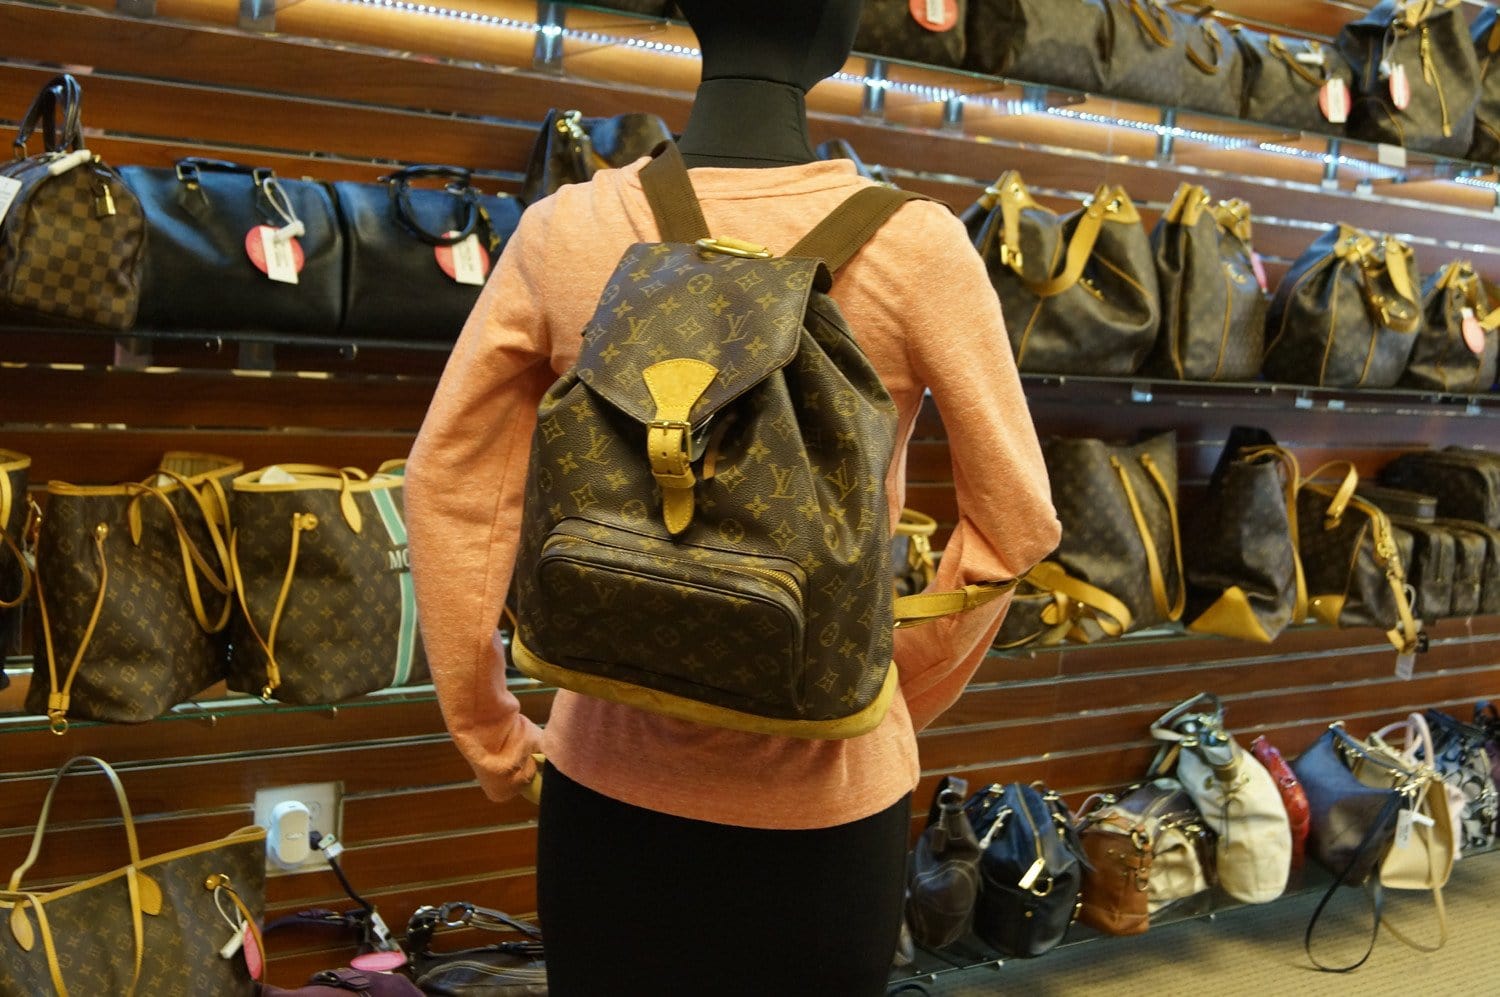 Louis Vuitton Lv Backpack Bag Montsouris